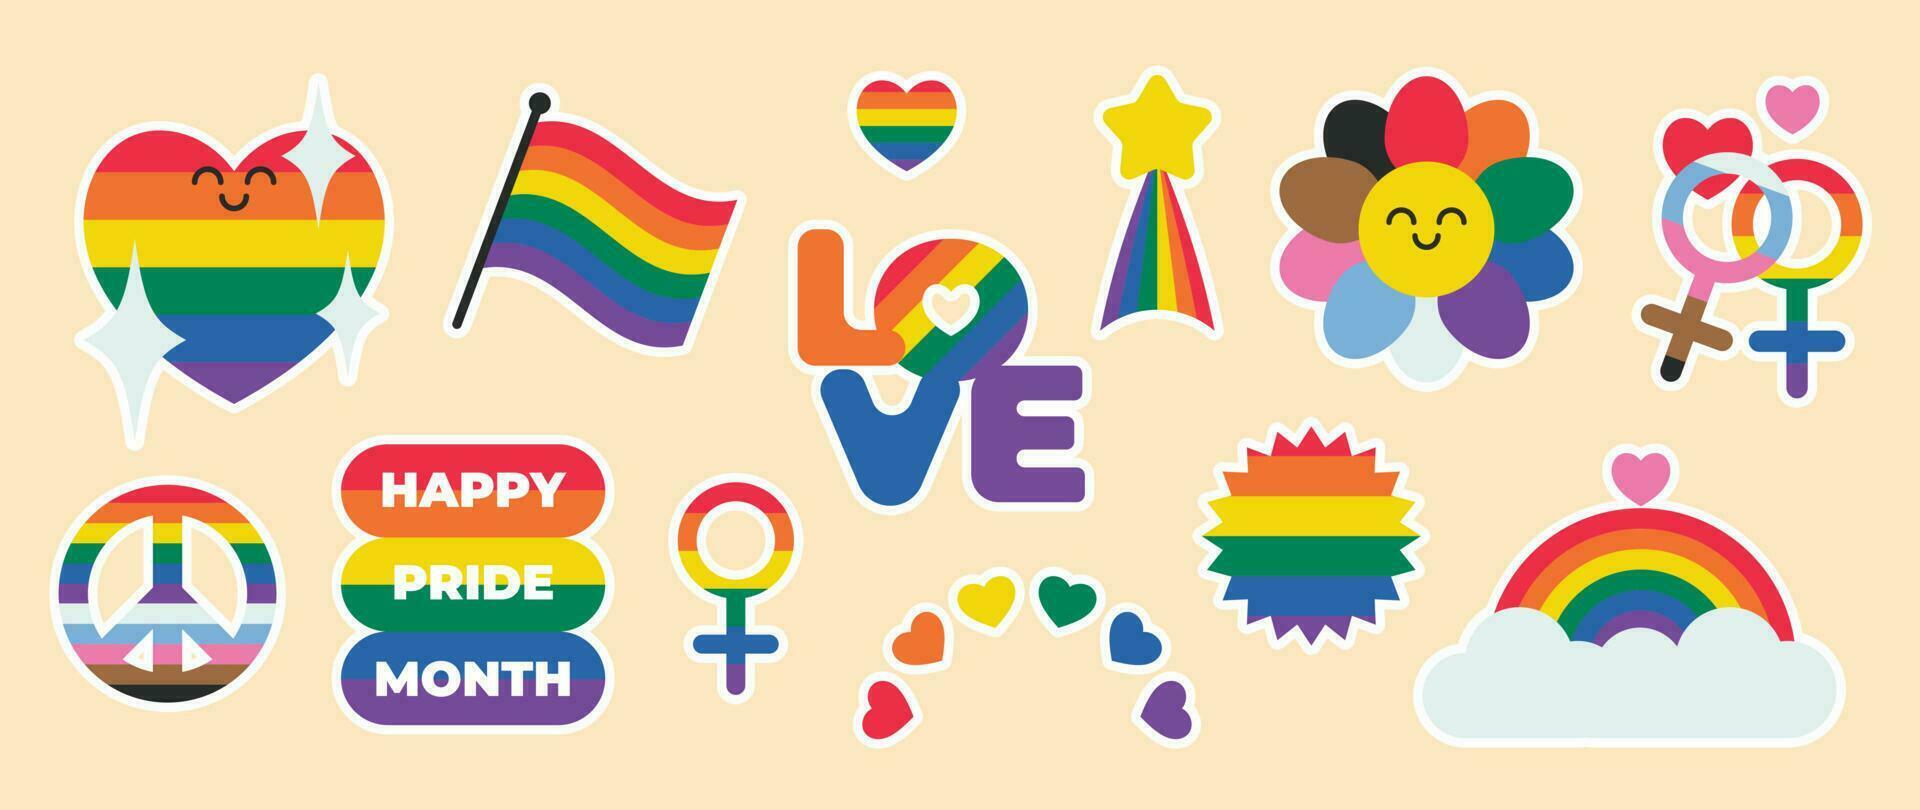 content fierté lgbtq élément ensemble. lgbtq communauté symboles avec arc en ciel drapeau, fleur, cœur. éléments illustré pour fierté mois, bisexuel, transgenres, le sexe égalité, autocollant, droits concept. vecteur